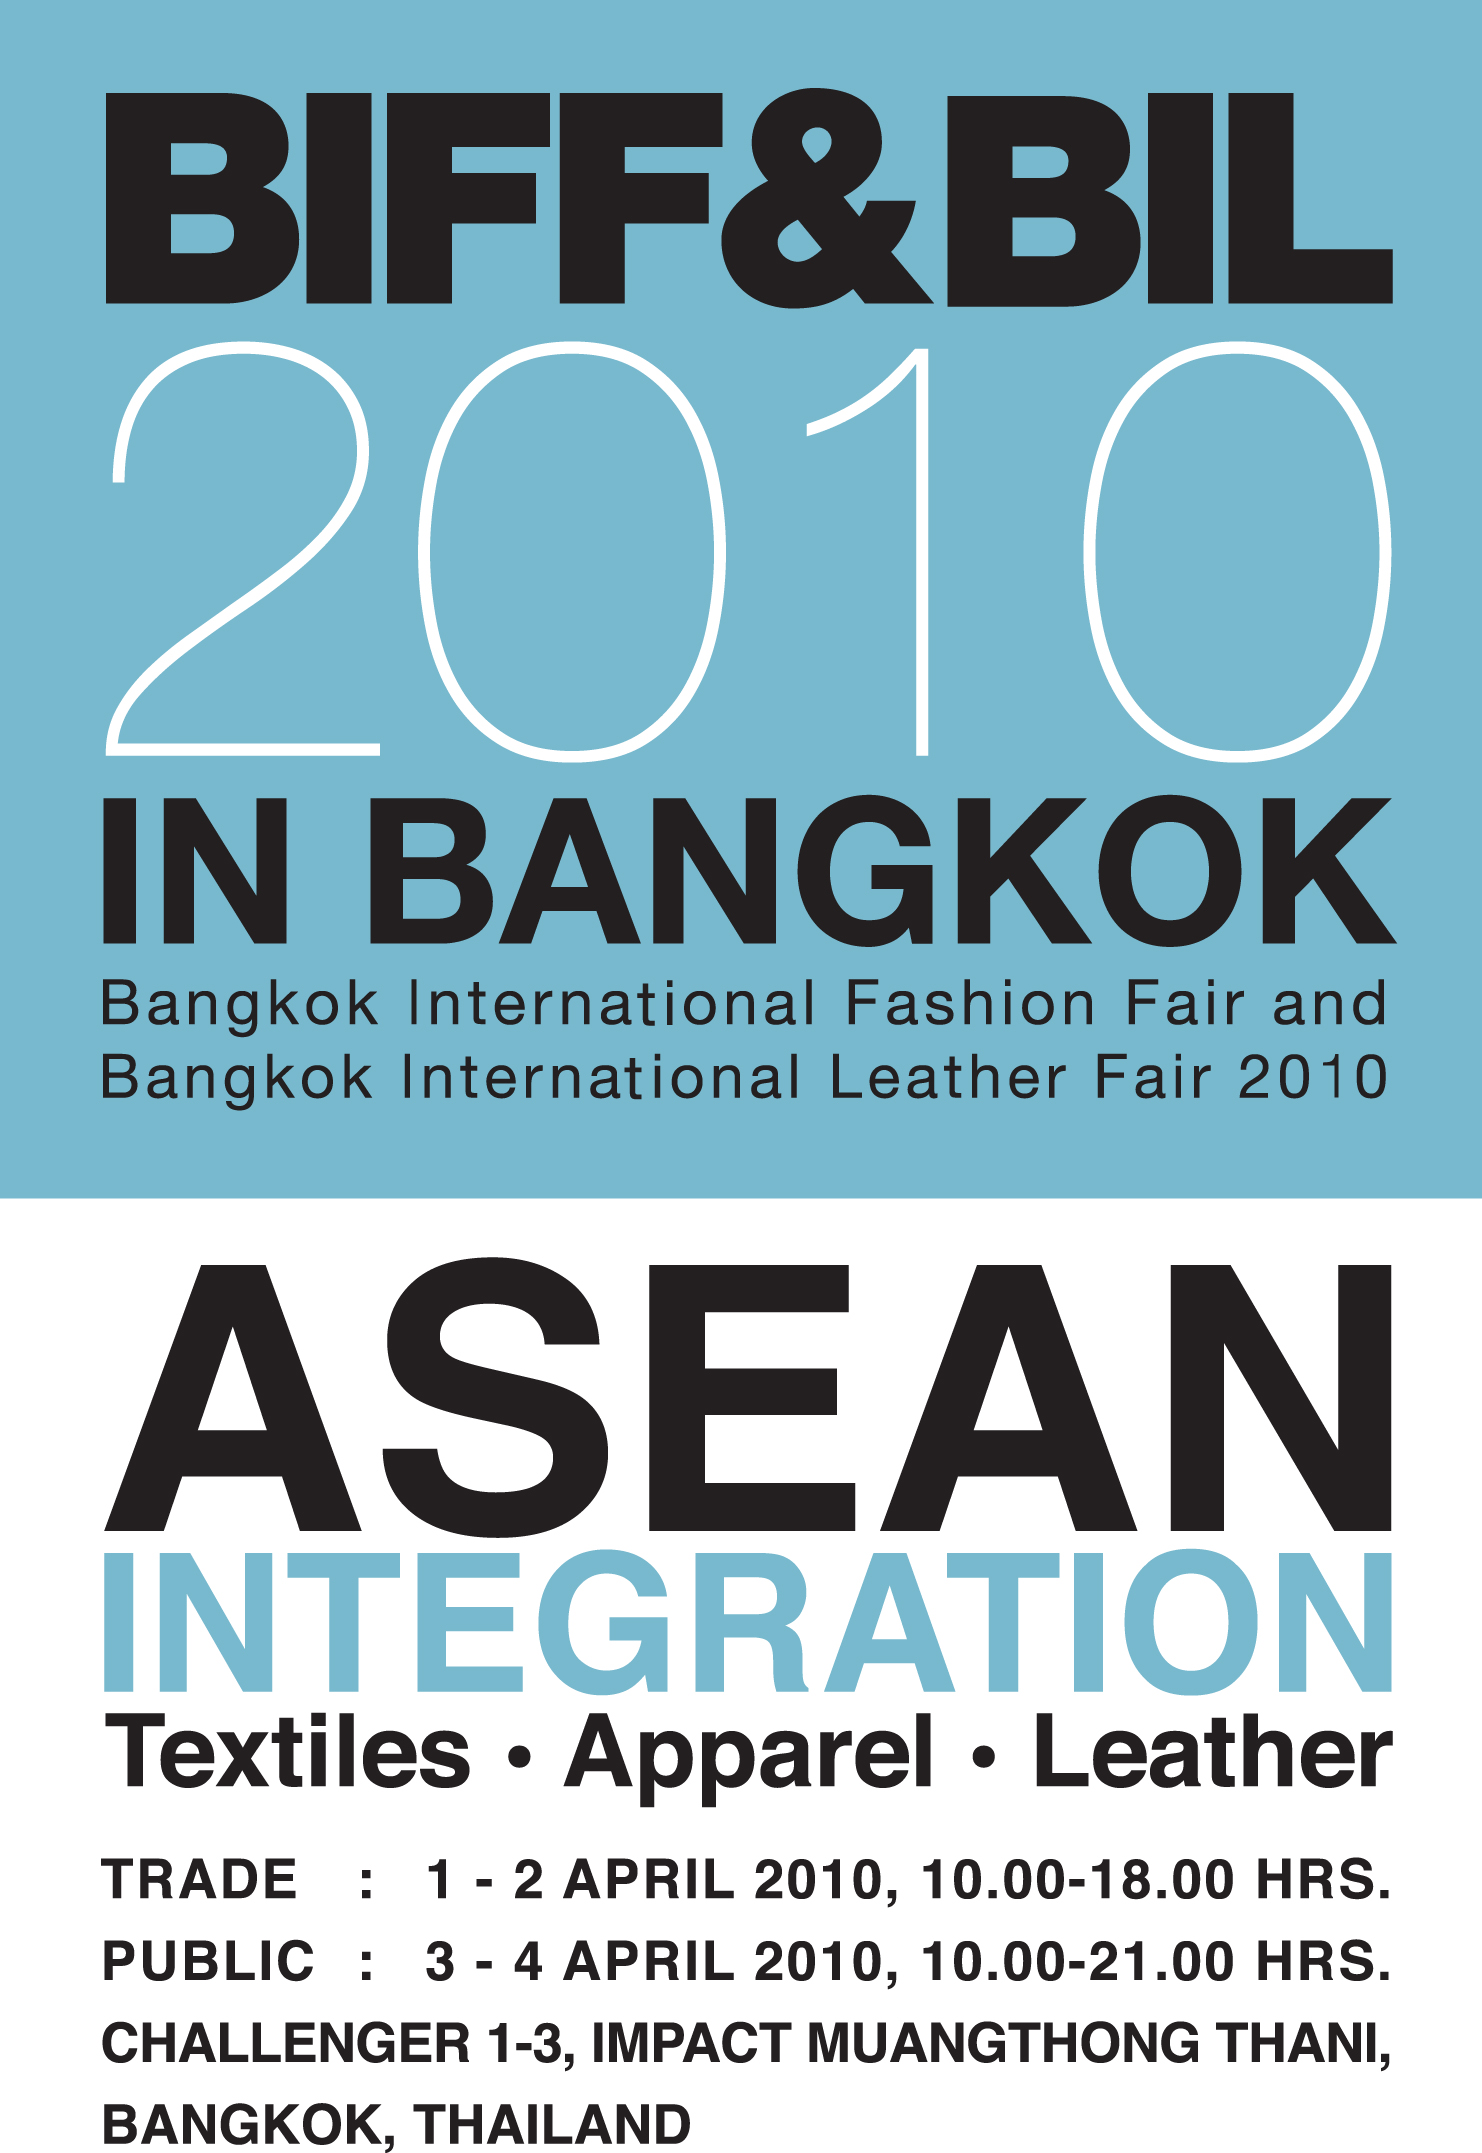 Bangkok International Fashion Fair 2010